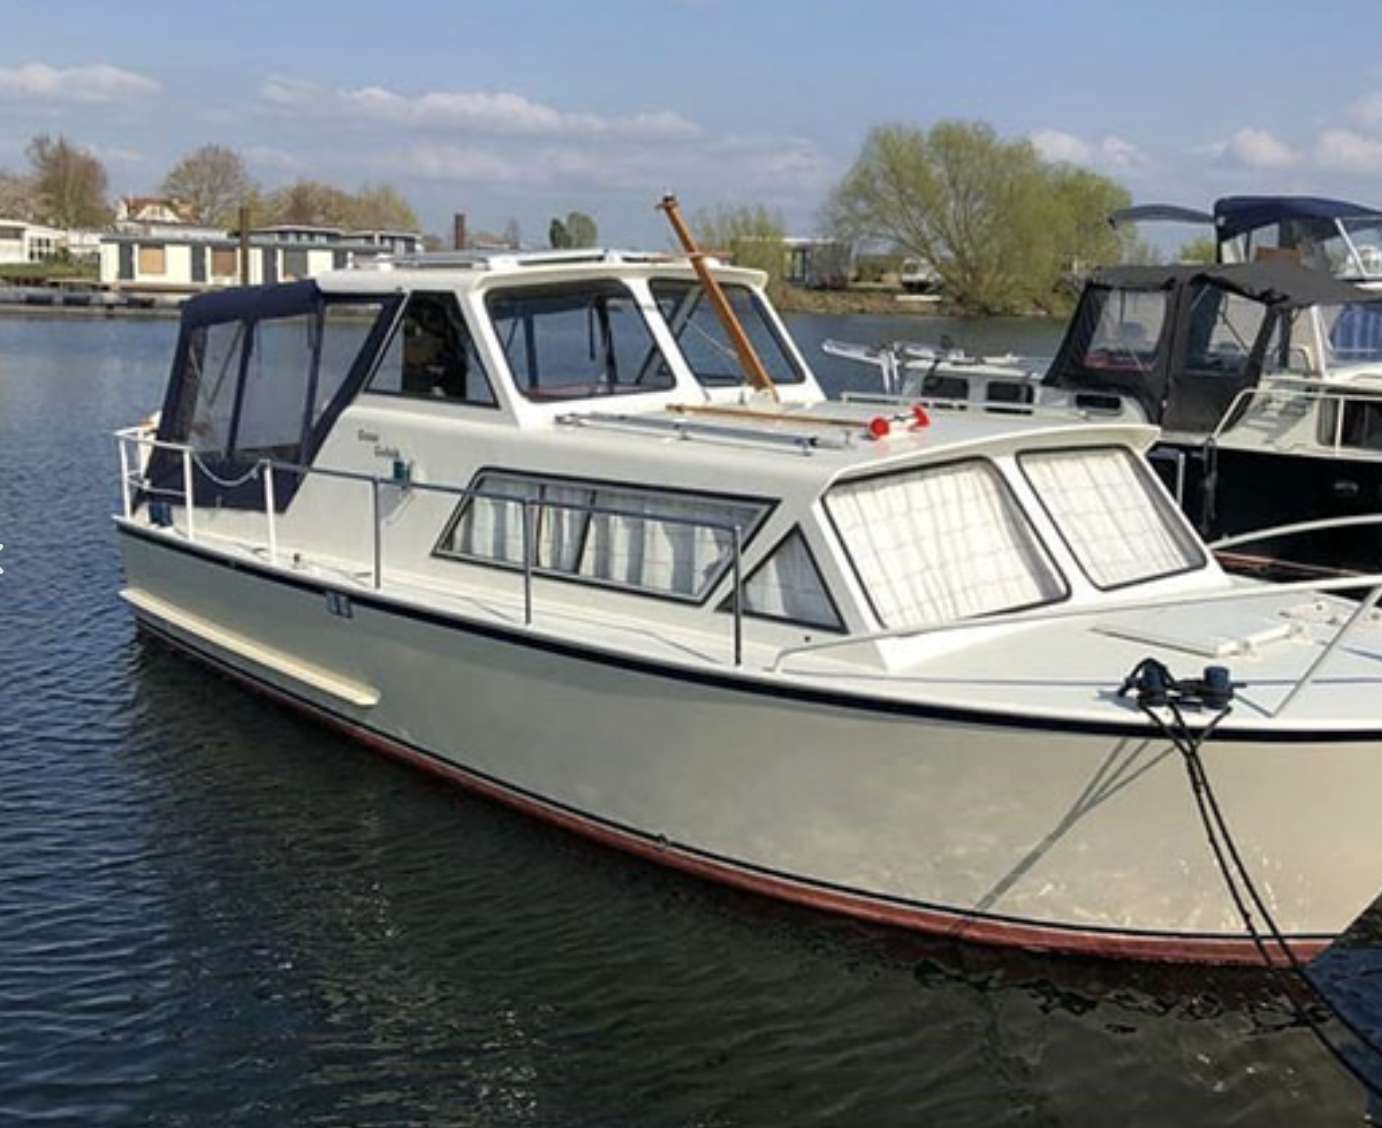 850 TK - Yacht Charter Lemmer & Boat hire in Netherlands Lemmer Lemmer 1